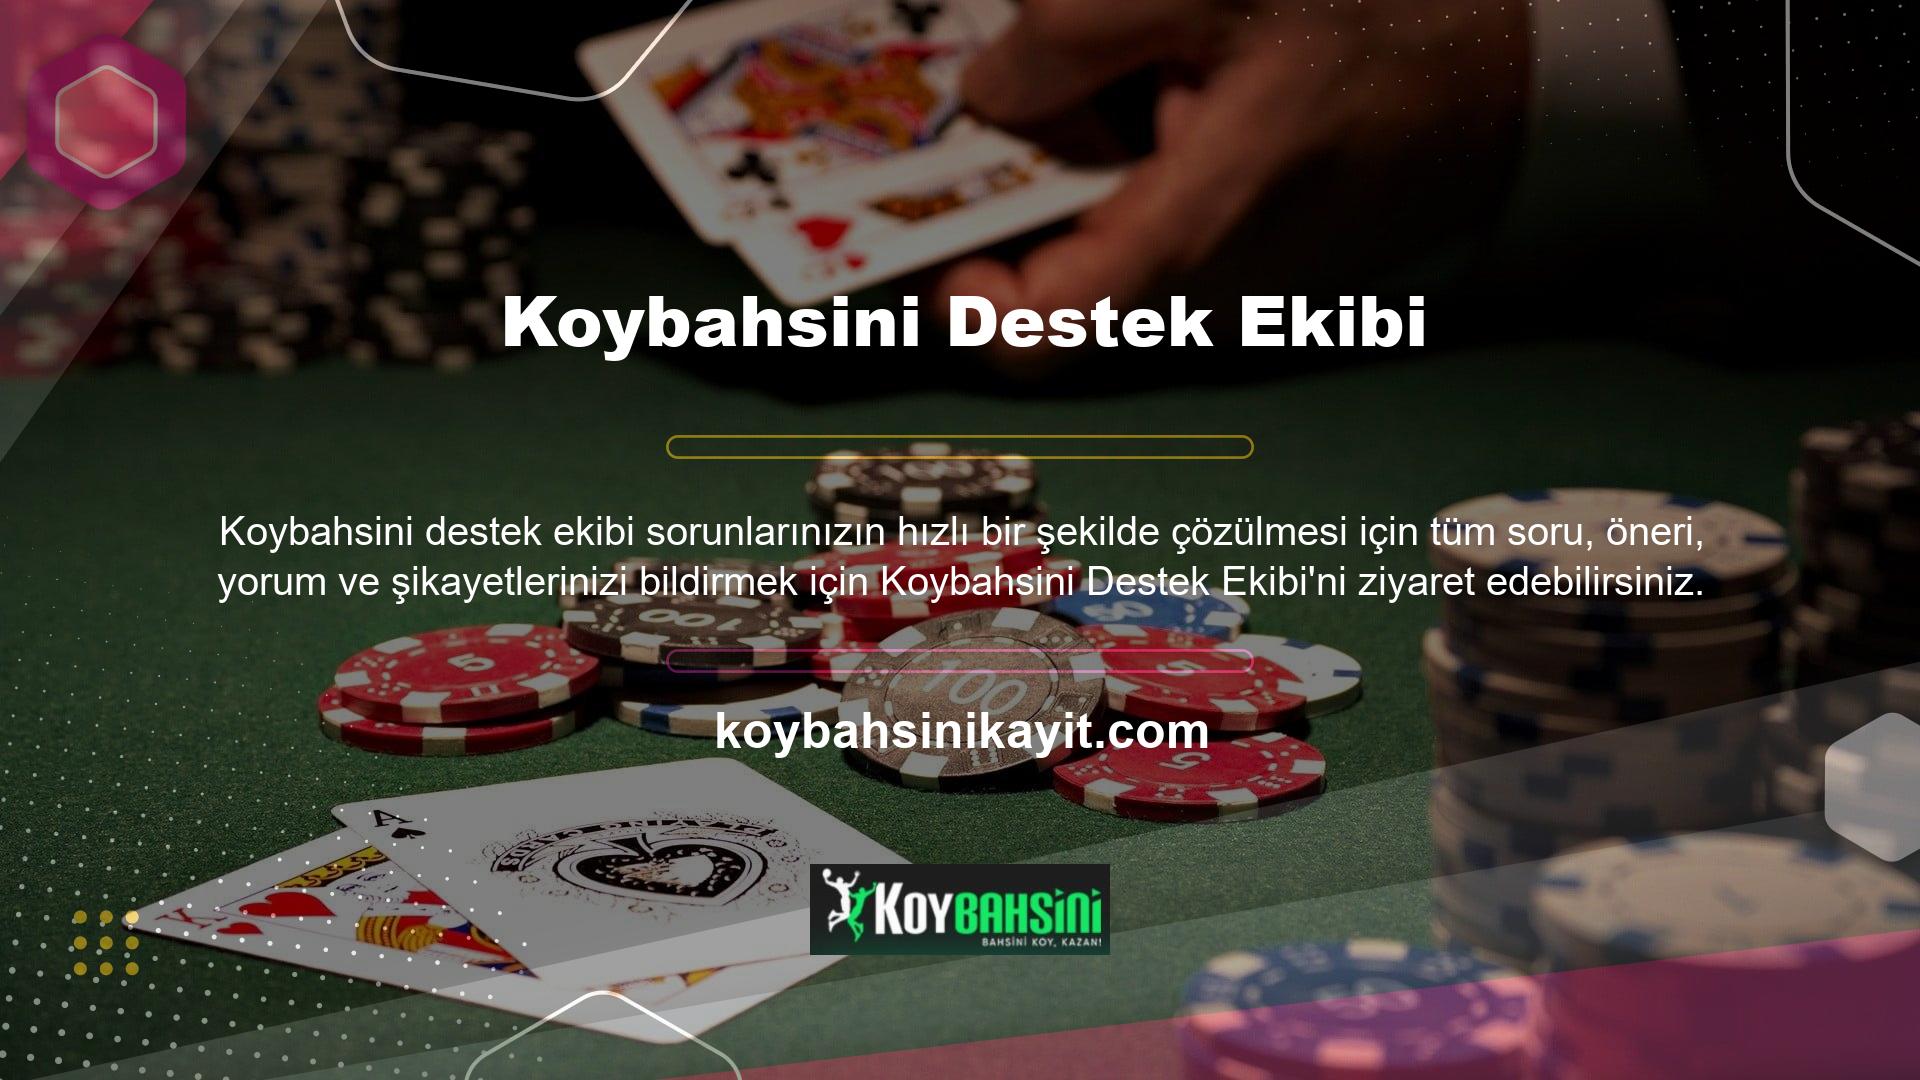 Koybahsini Tv  Destek EkibiKoybahsini bahis sitesi, kullanıcıların canlı bahis yaparken maçı takip etmelerini sağlayan özel bir oyun izleme hizmeti hazırladı